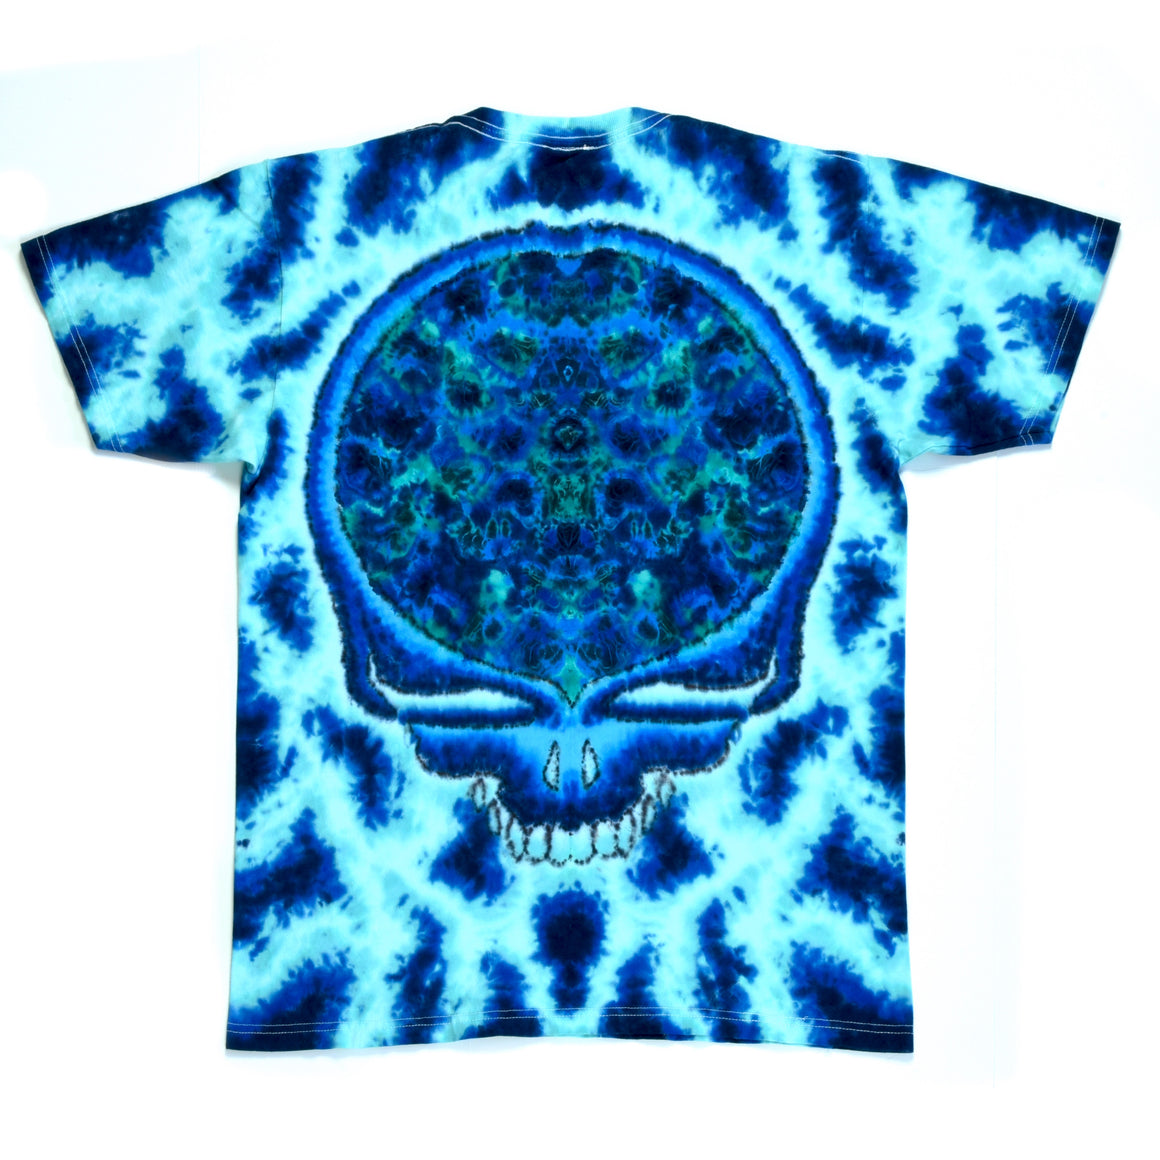 Medium Tie Dye T-Shirt - Aquatic Stealie Mandala Combo